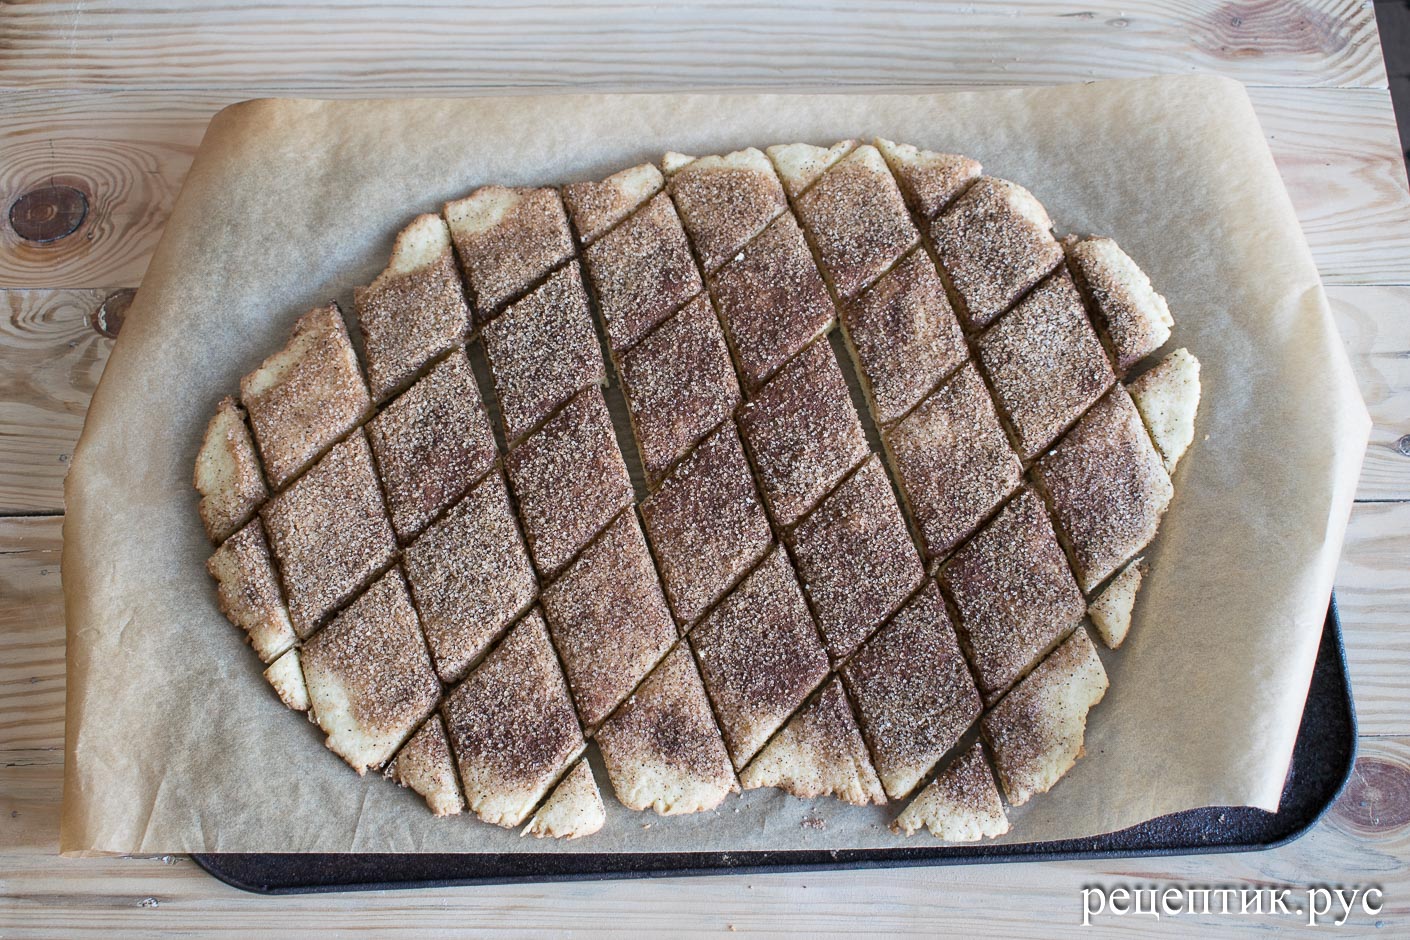 Еврейское печенье «Земелах» с корицей - рецепт с фото, результат